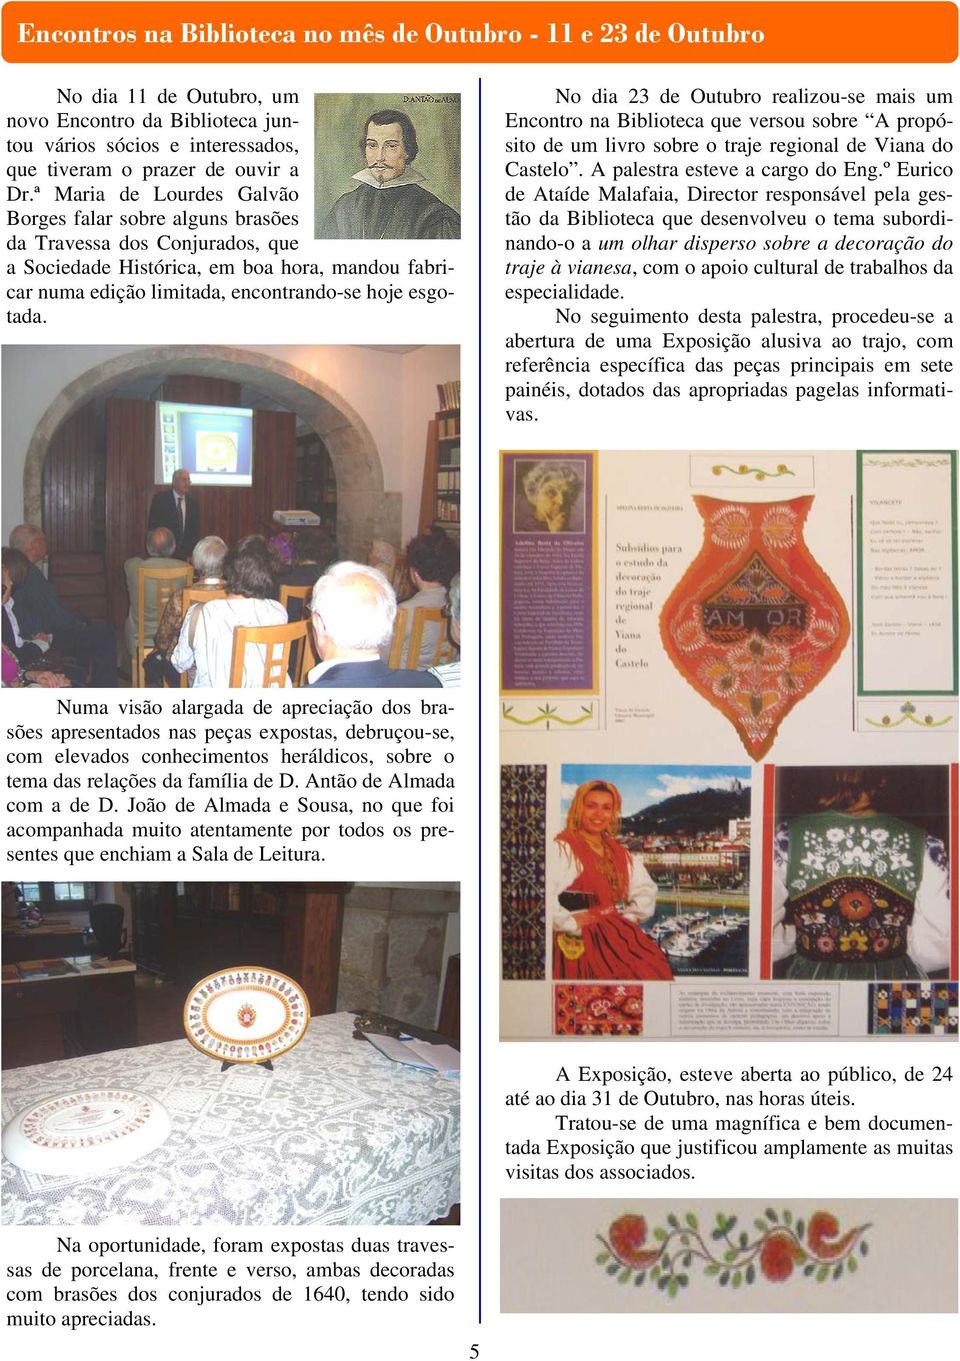 No dia 23 de Outubro realizou-se mais um Encontro na Biblioteca que versou sobre A propósito de um livro sobre o traje regional de Viana do Castelo. A palestra esteve a cargo do Eng.